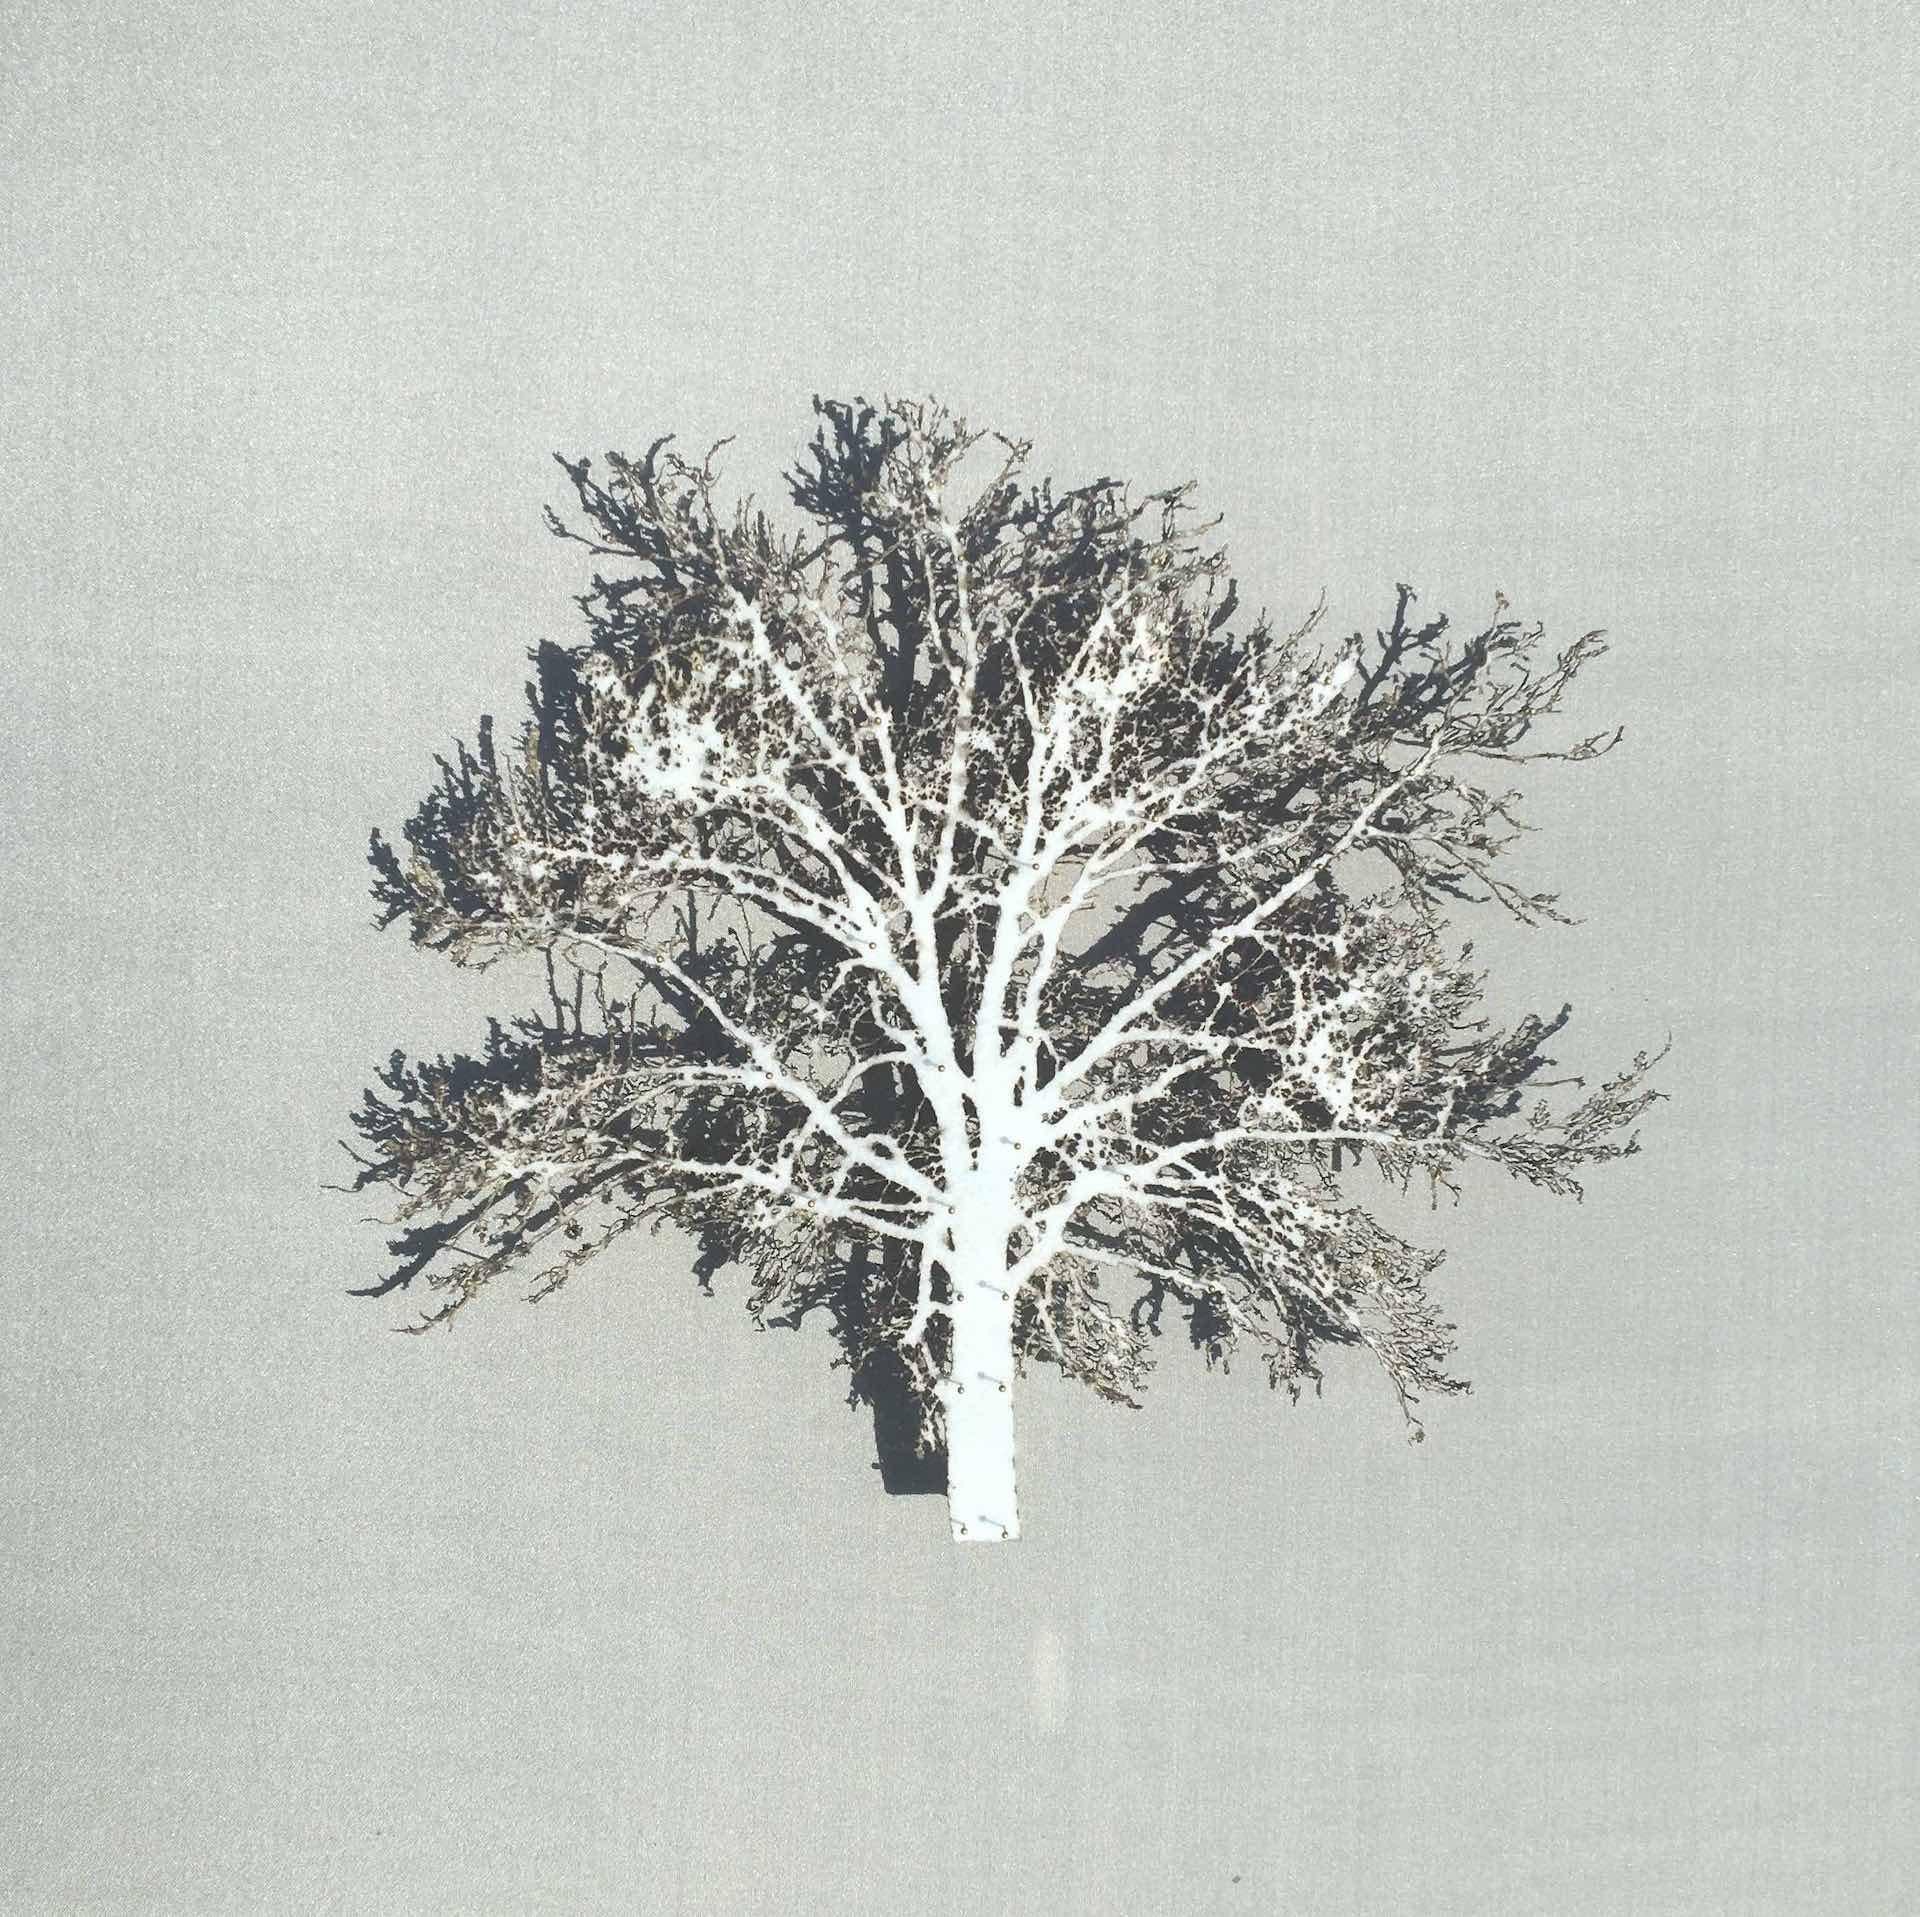 Emma Levine Landscape Painting - White Oak, Contemporary 3D Tree Art, Original Paper Cut, Minimalist Artwork